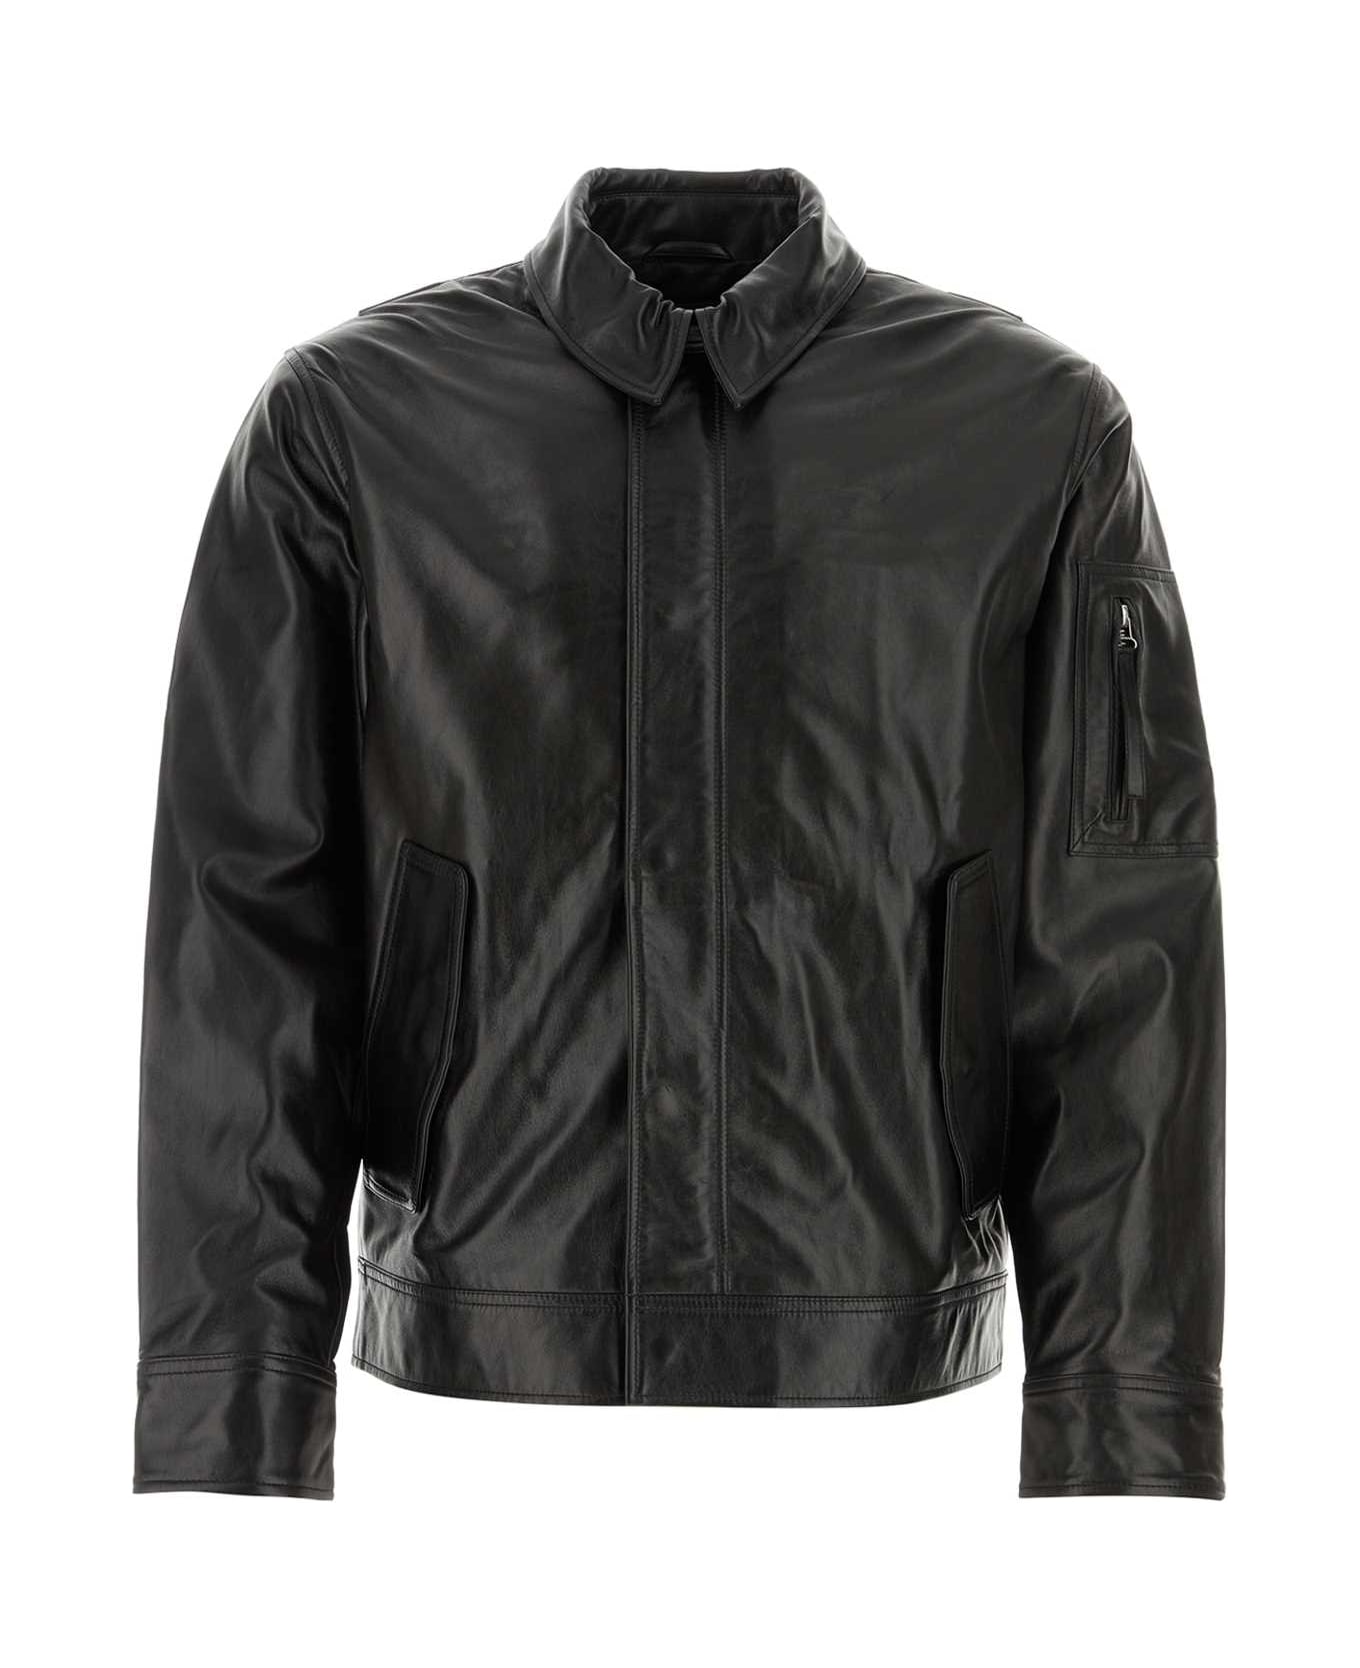 Helmut Lang Black Leather Jacket - Black